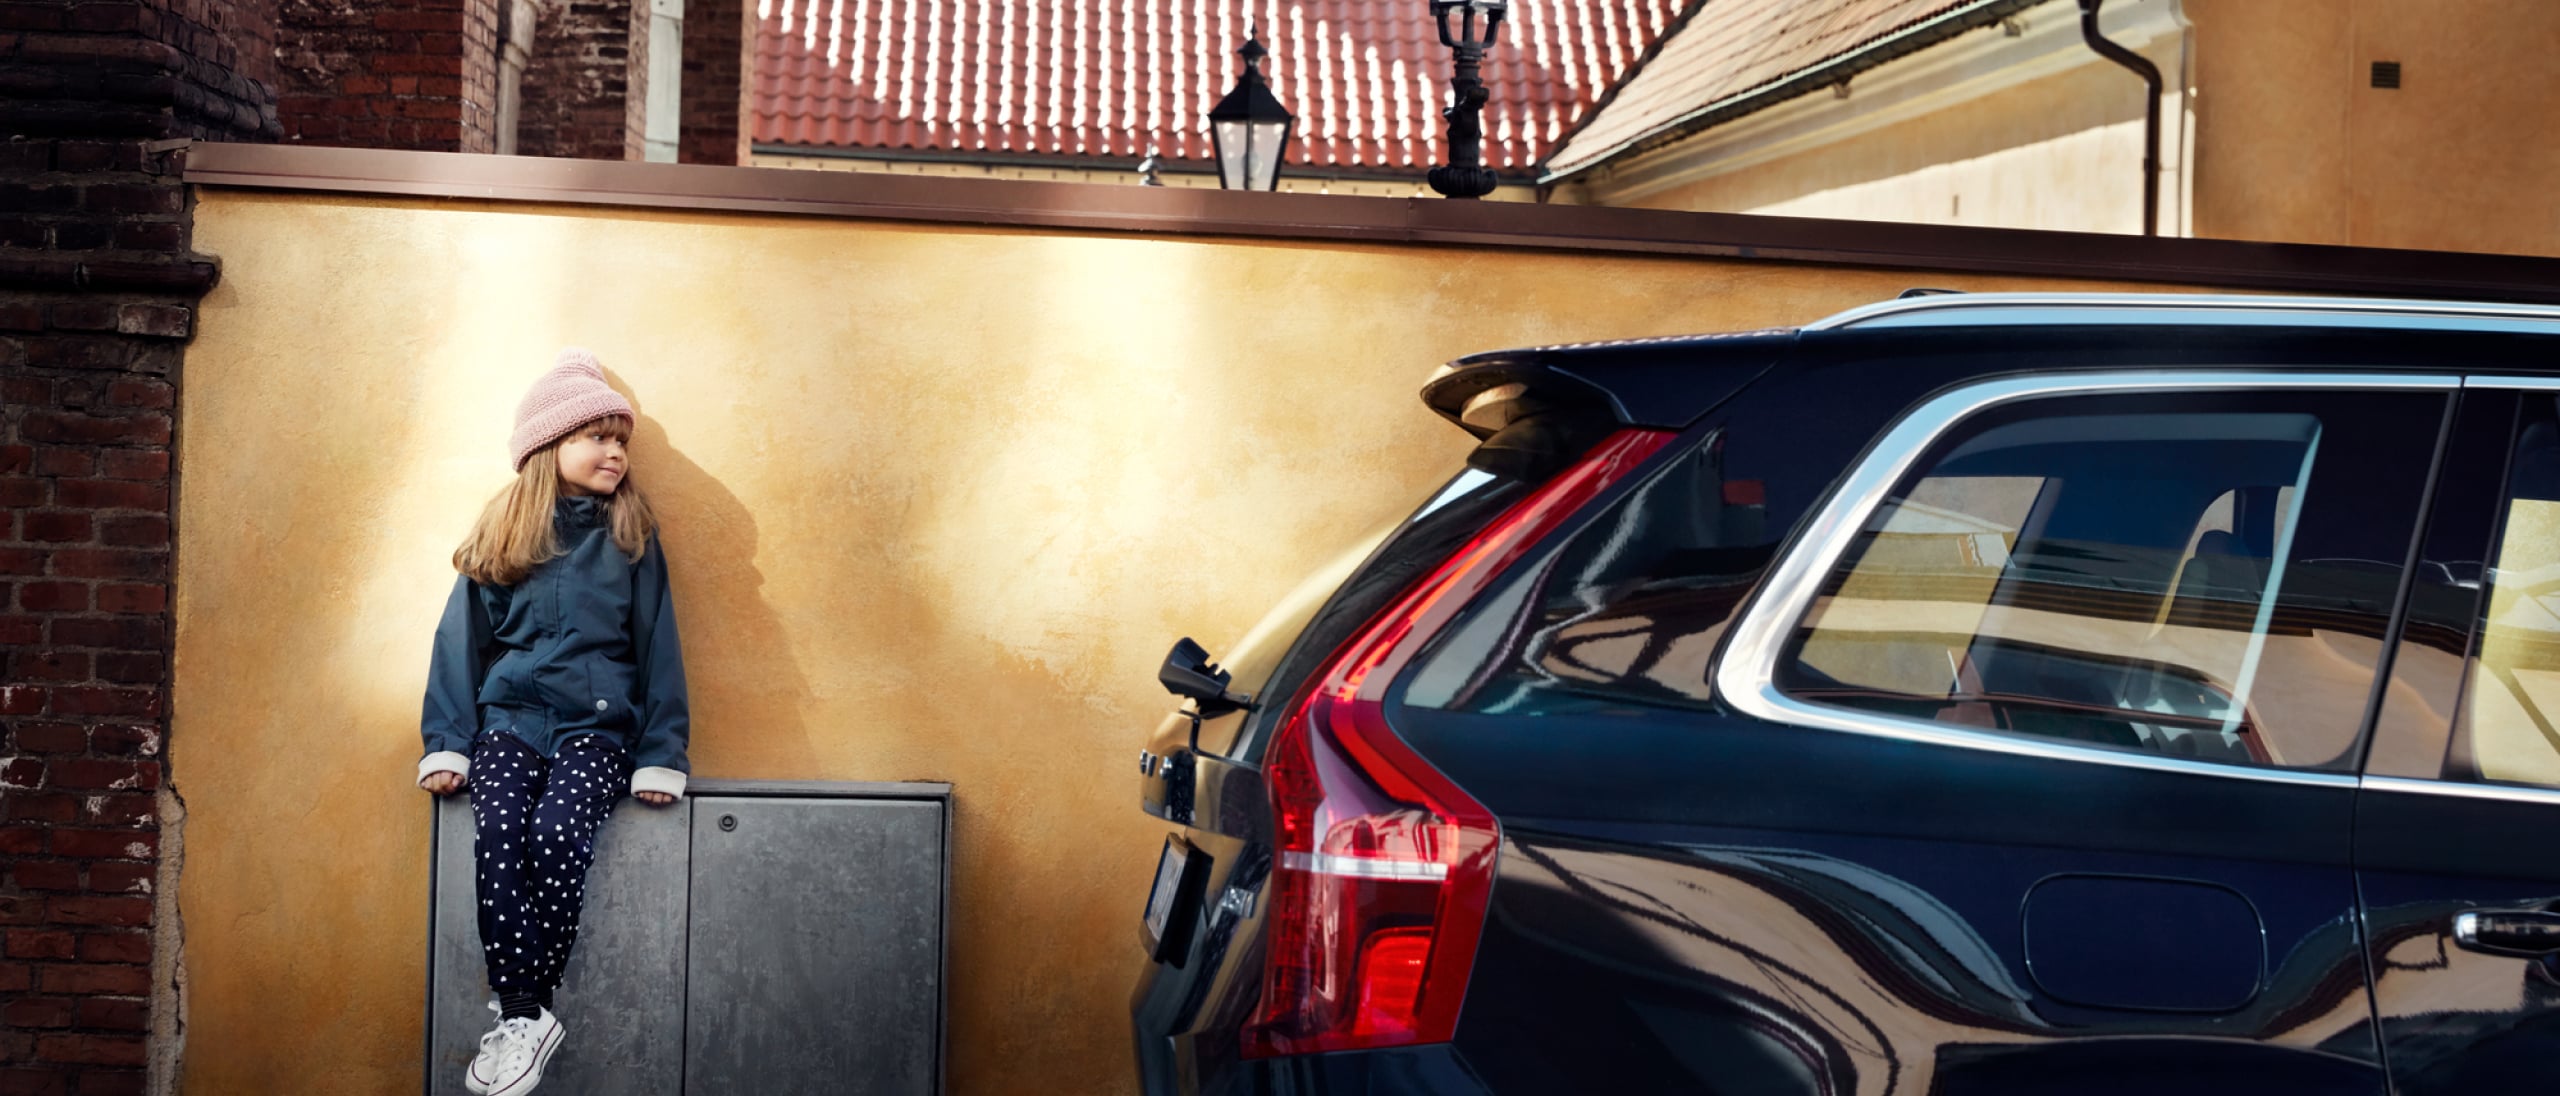 Een kind zit tegen een muur geleund met een zwarte Volvo ernaast geparkeerd.